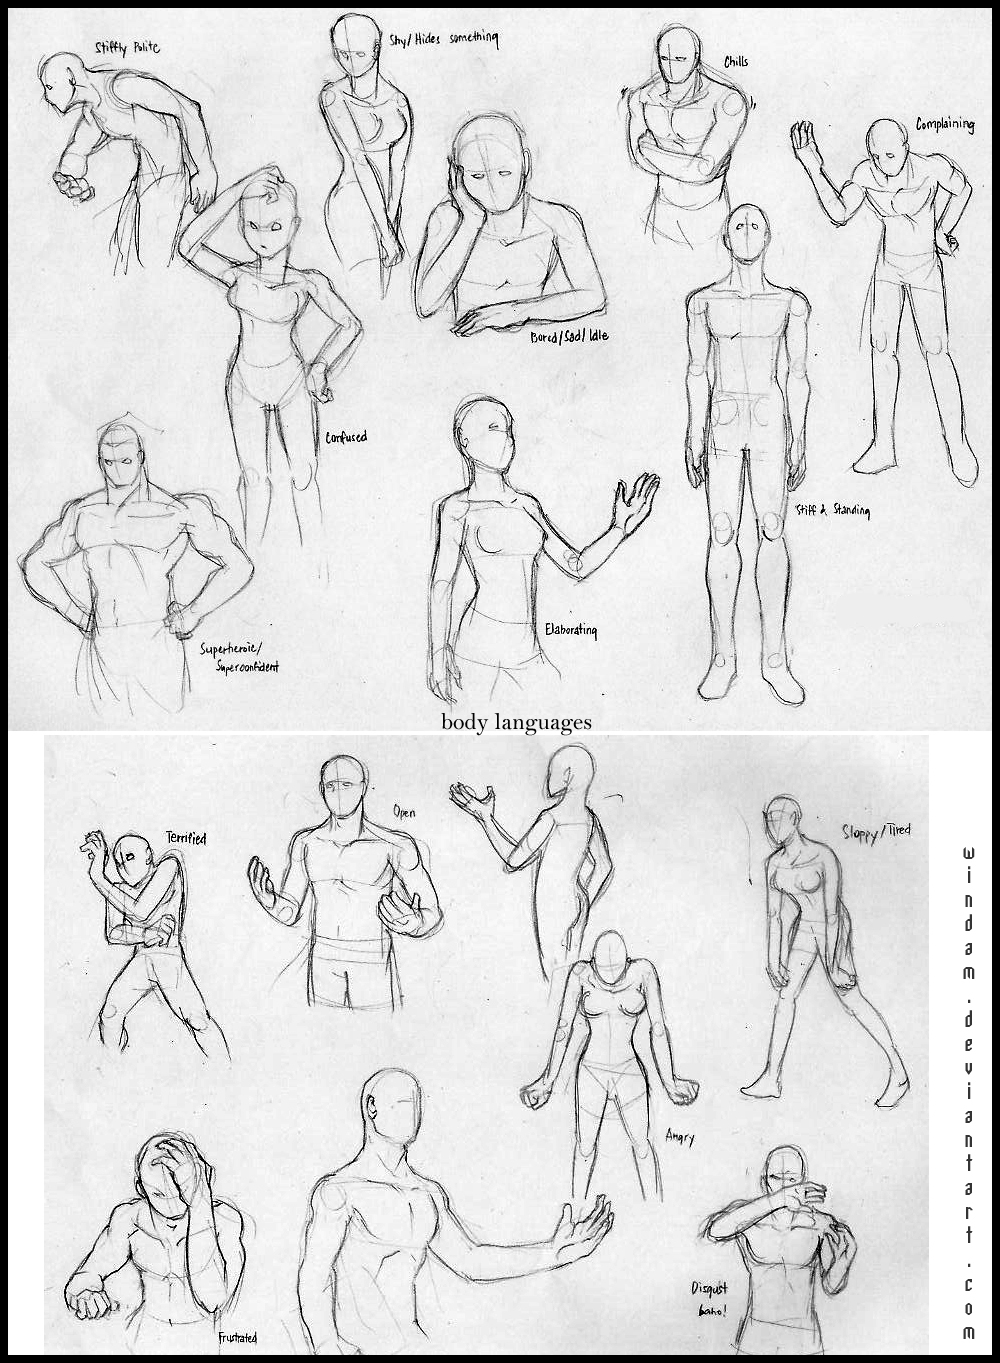 Body Language Examples